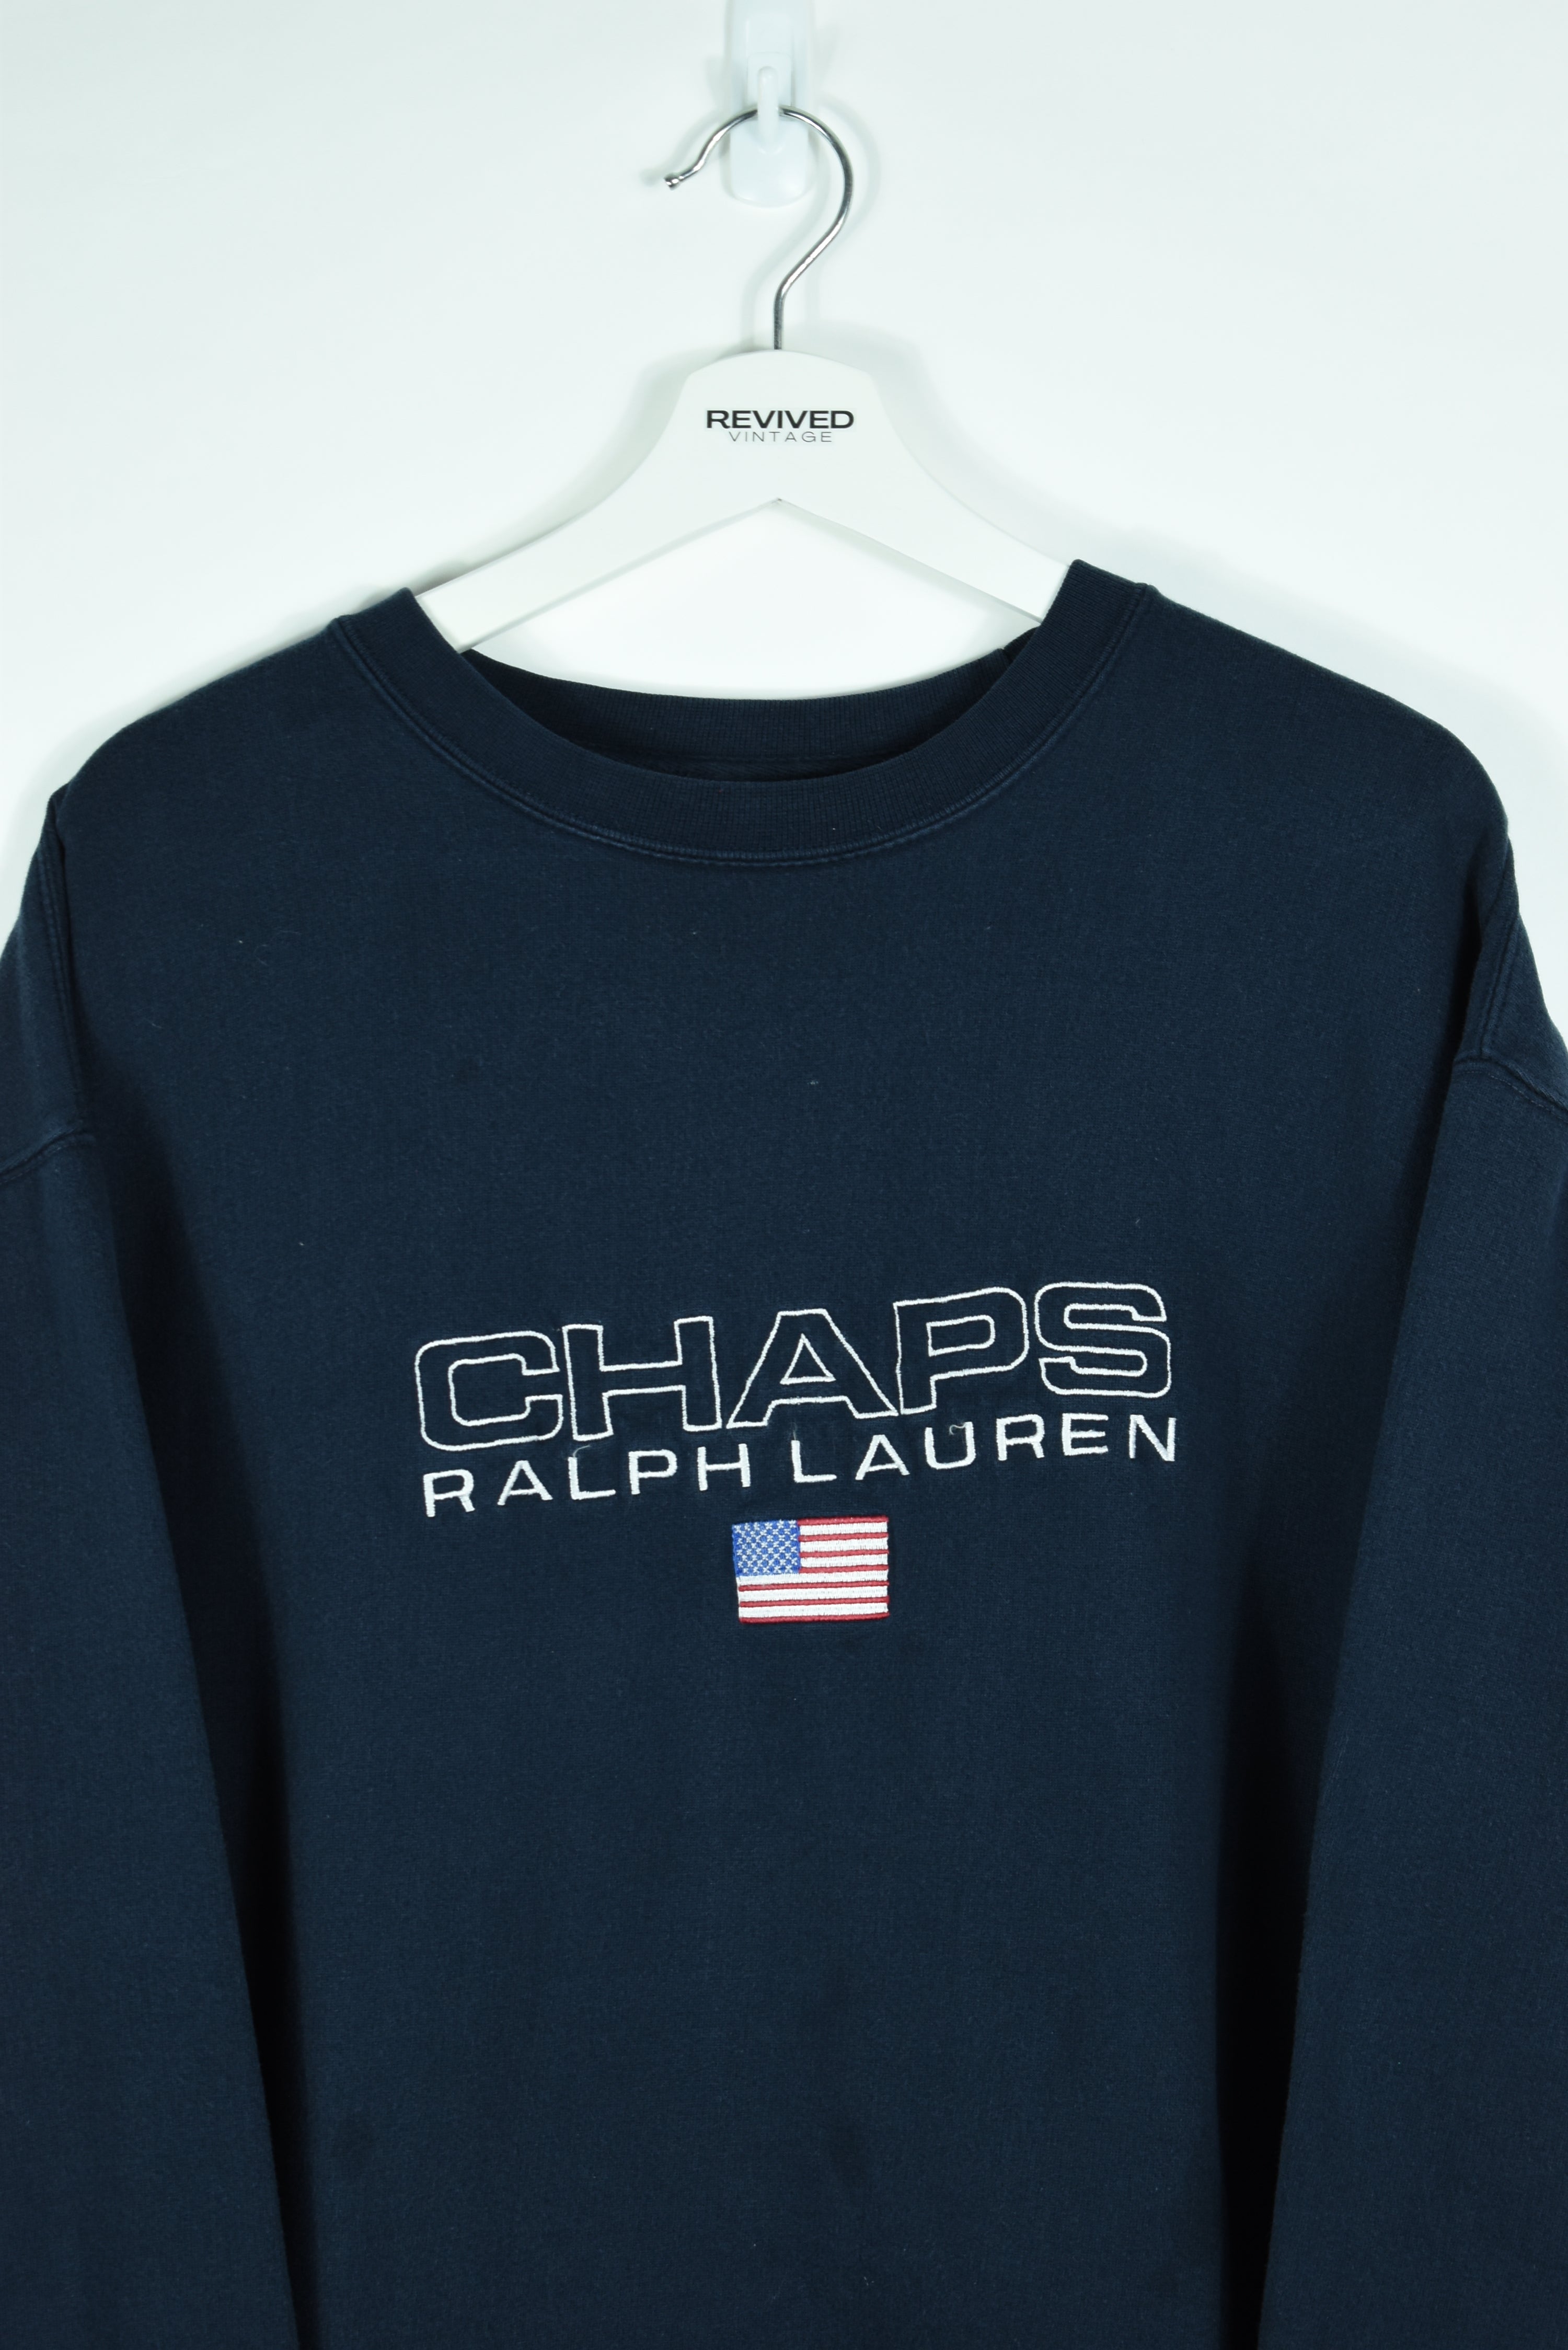 Vintage Chaps Ralph Lauren Navy Embroidery Sweatshirt Xlarge